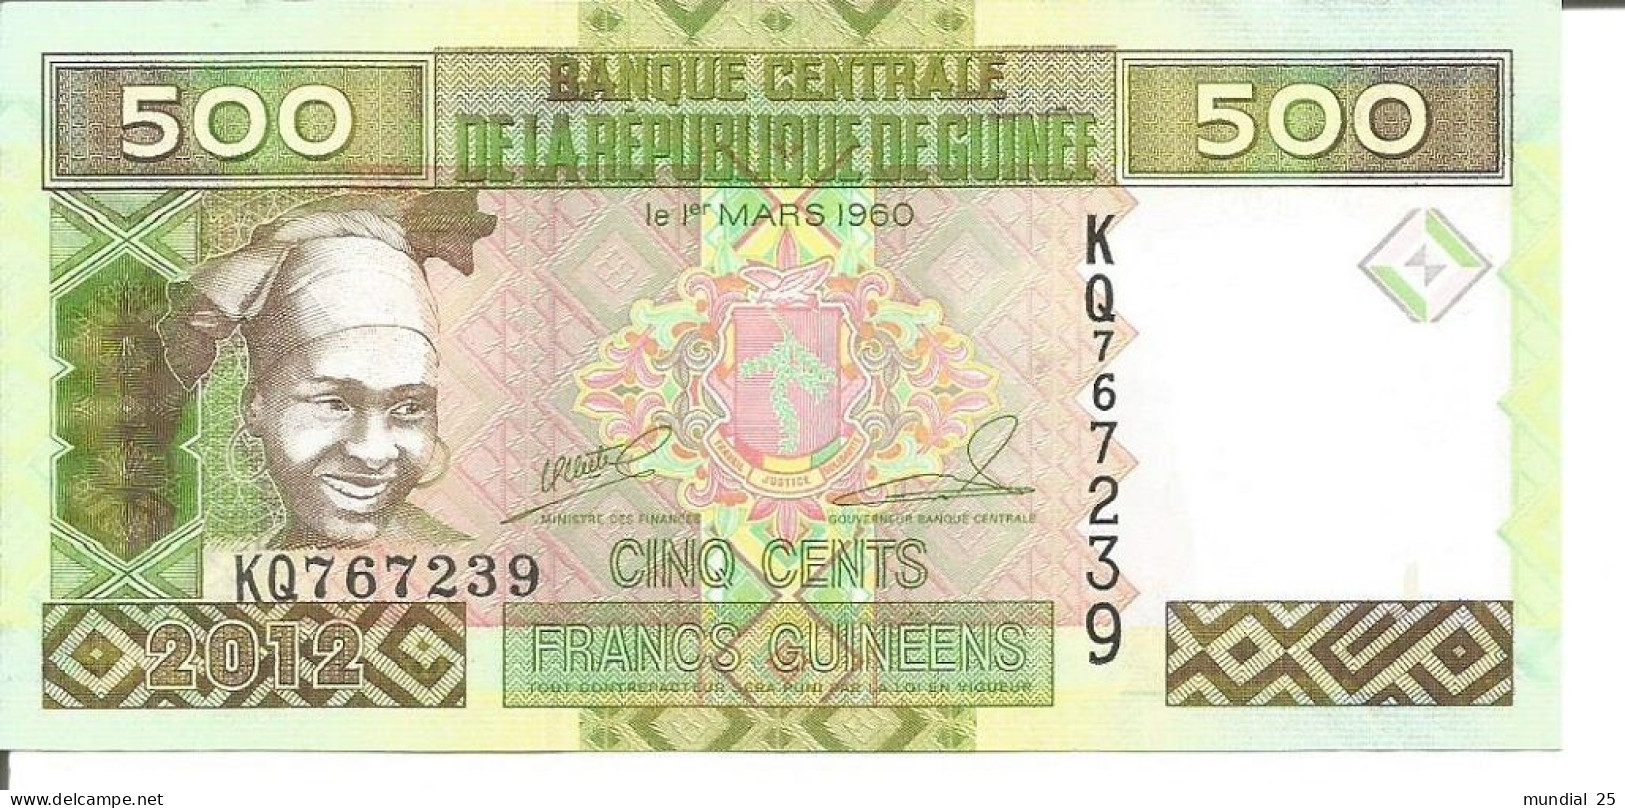 2 GUINEA NOTES 500 FRANCS GUINÉENS 2012 - Guinée